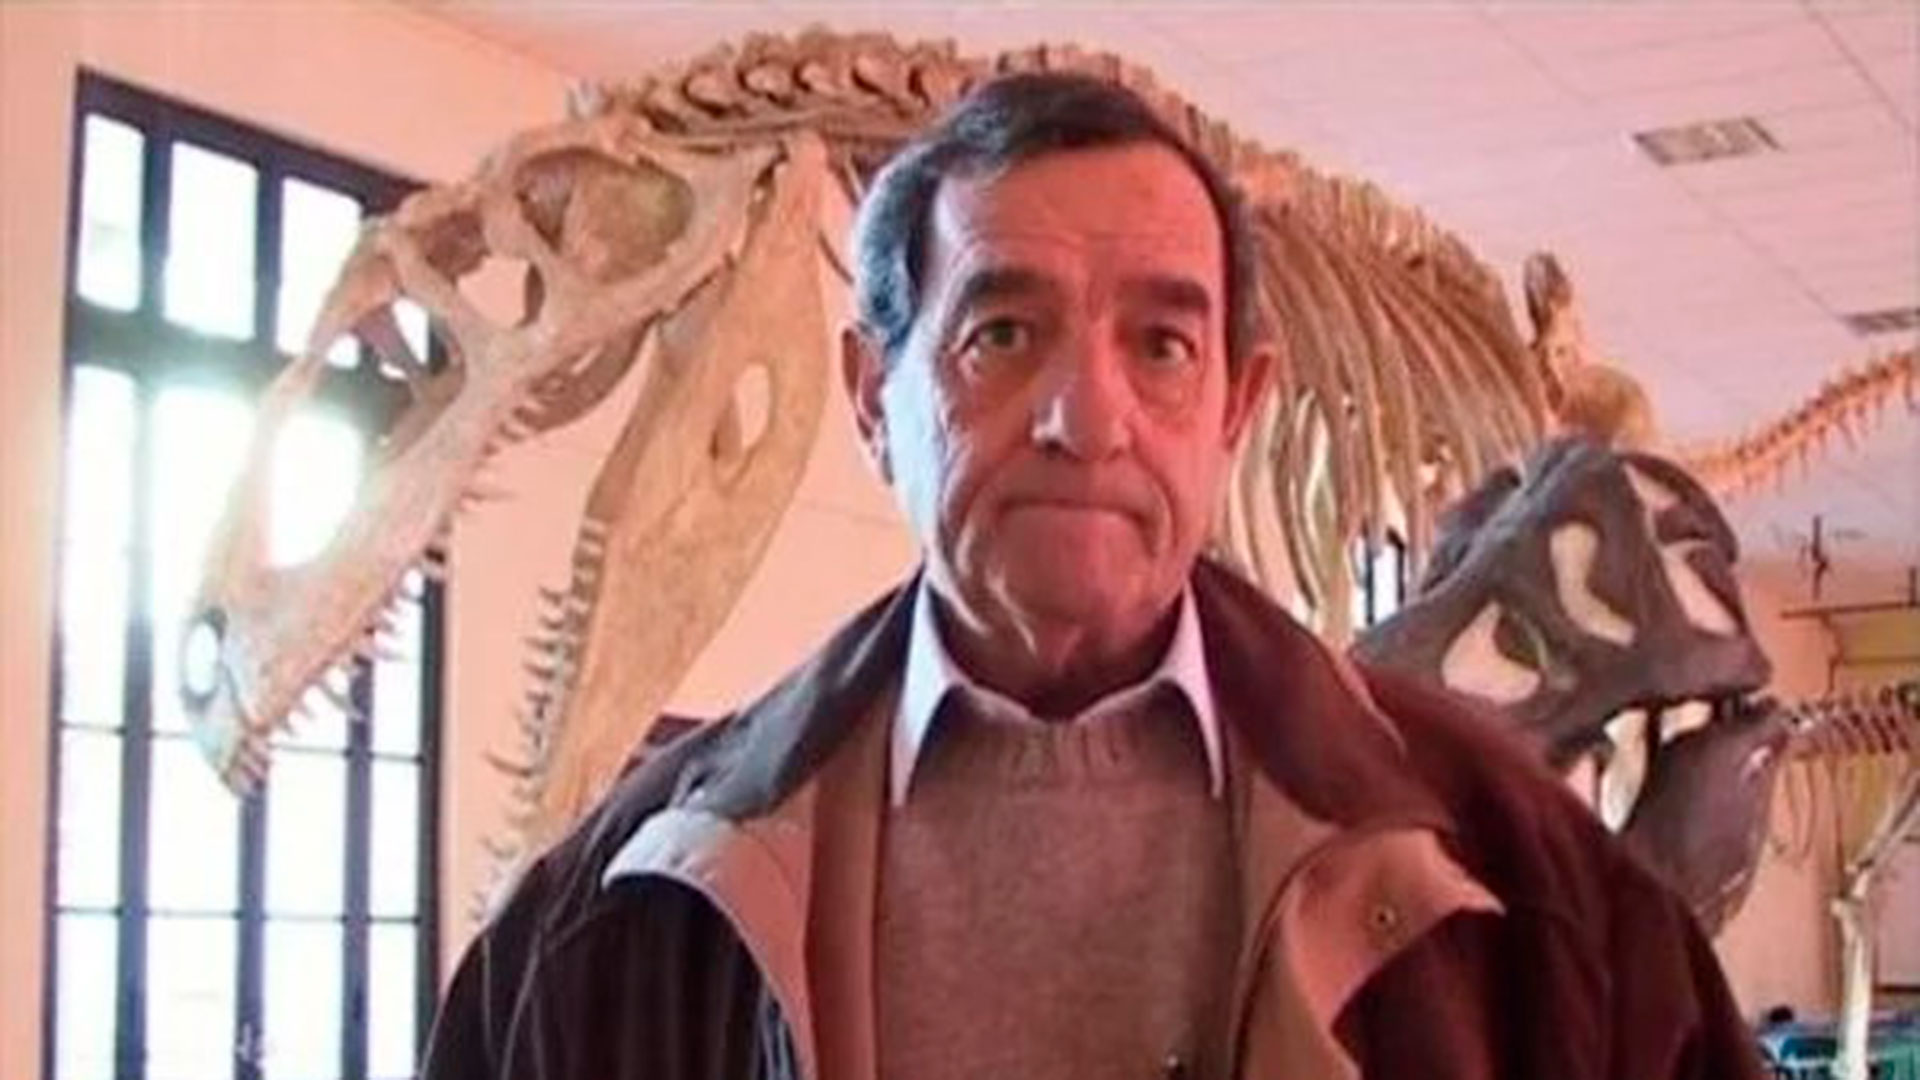 El argentino que descubrió el Giganotosaurus, el dinosaurio estrella de la  nueva Jurassic Park: “Acá no le dieron importancia” - Infobae